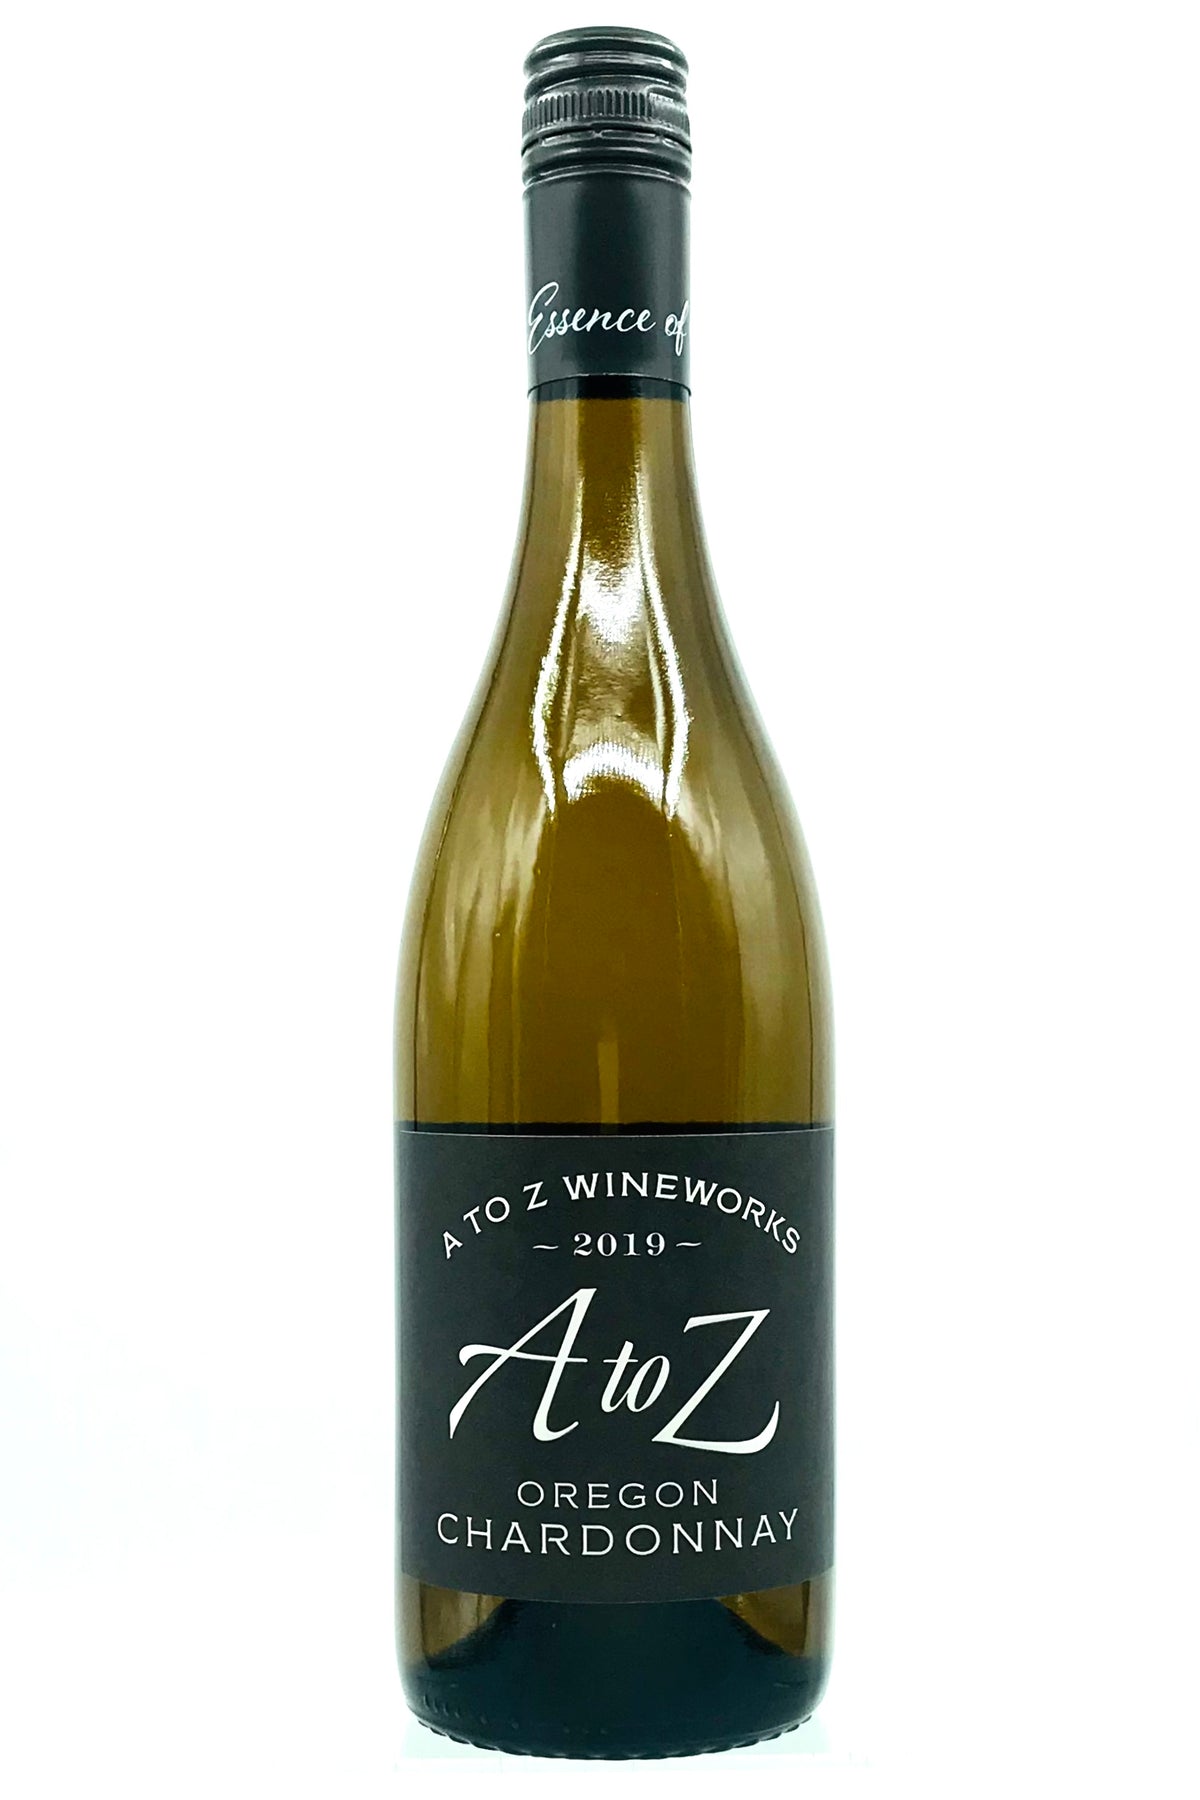 A to Z Wineworks 2019 Chardonnay Oregon